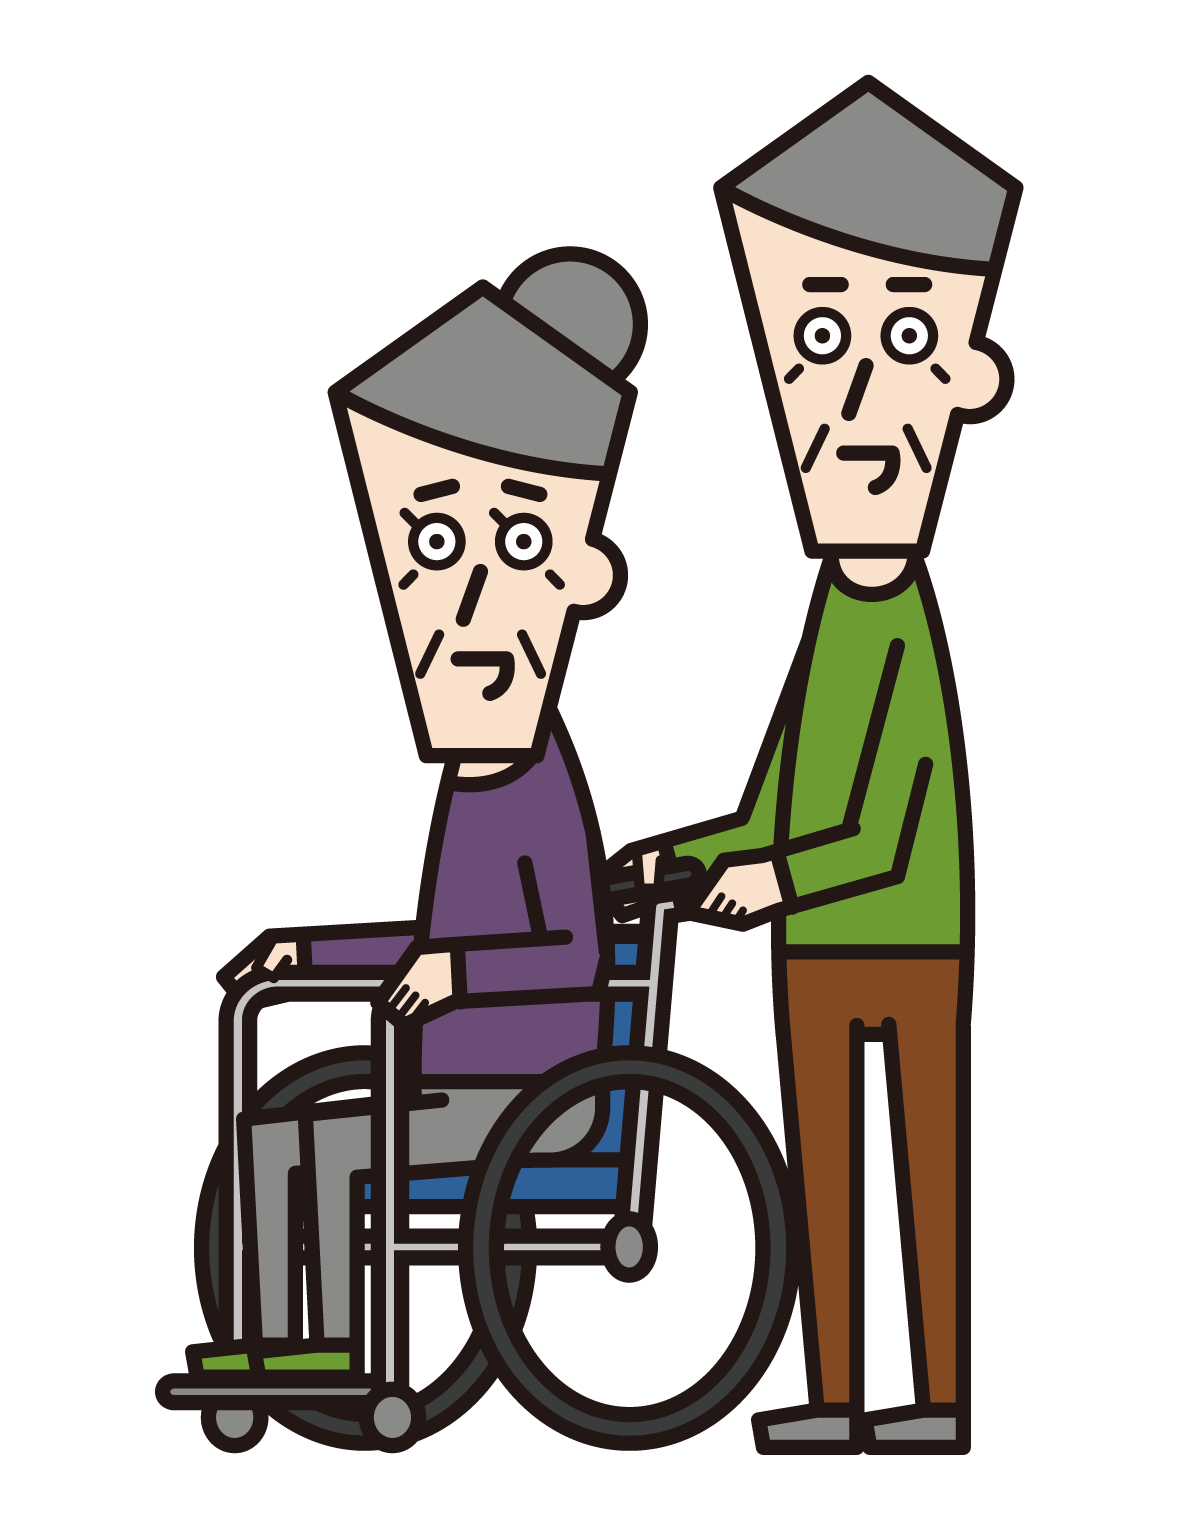 휠체어를 탄 사람(할머니)과 푸셔(할아버지)의 그림